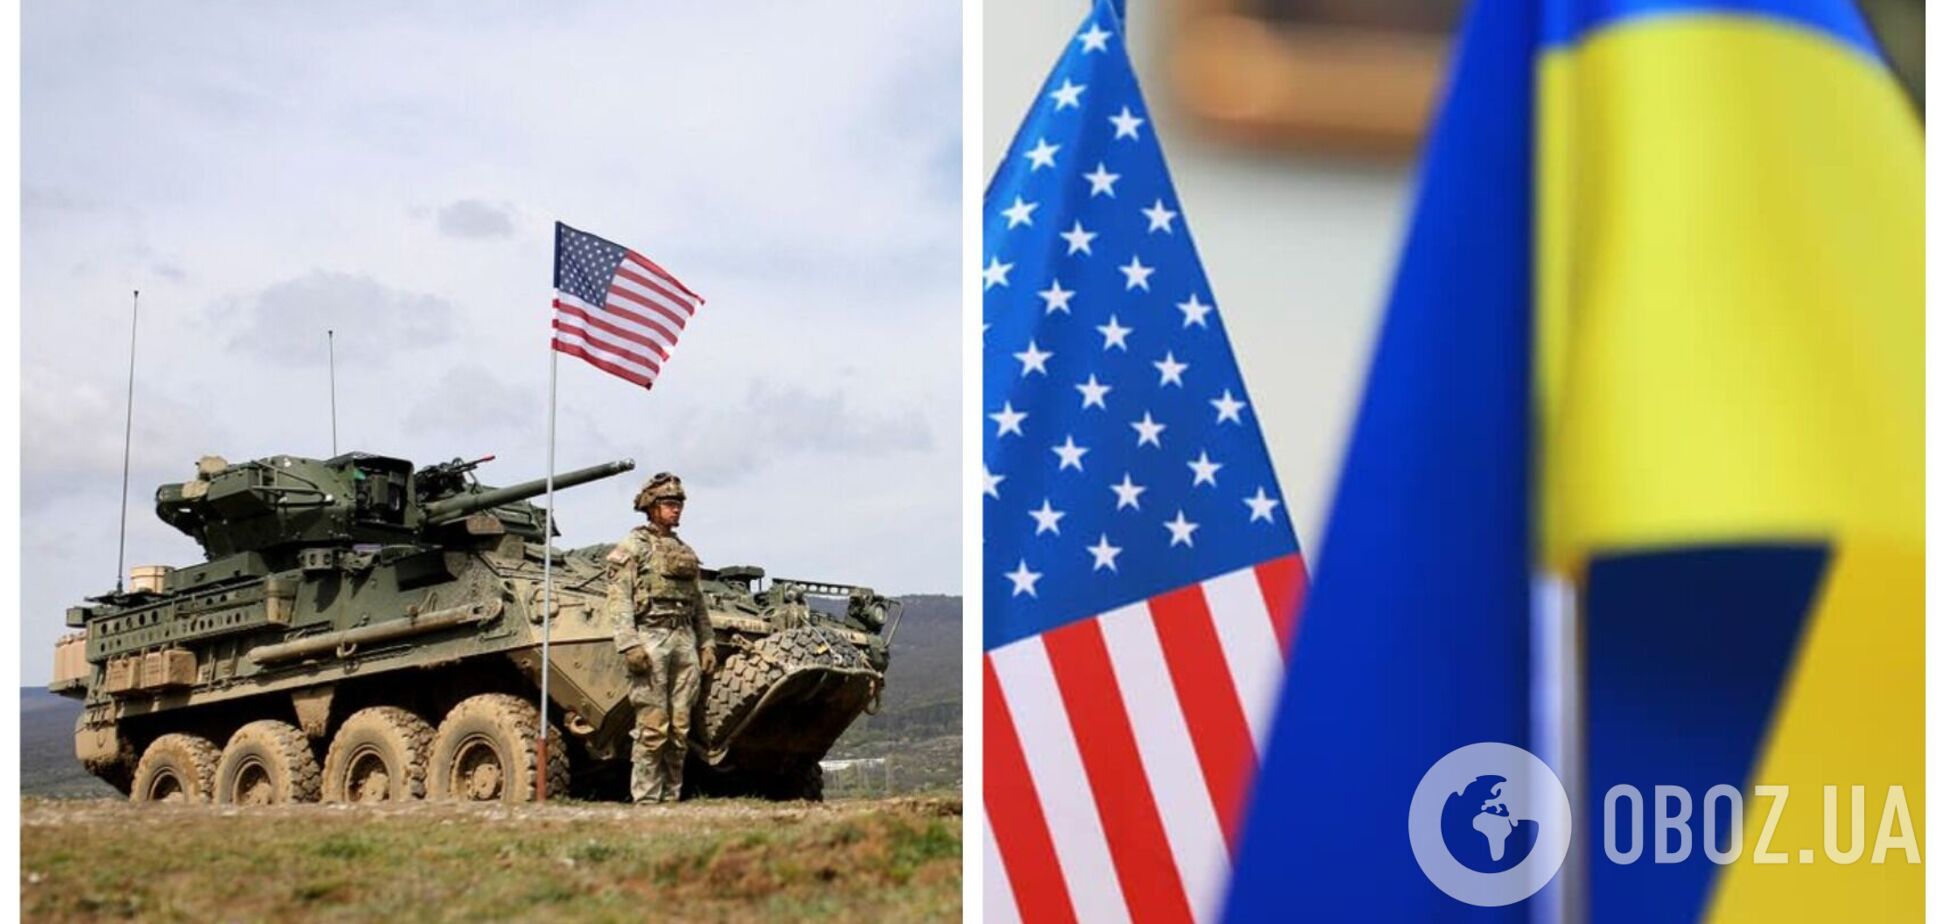 Как американцы относятся к поставкам оружия в Украину: обнародованы данные соцопроса